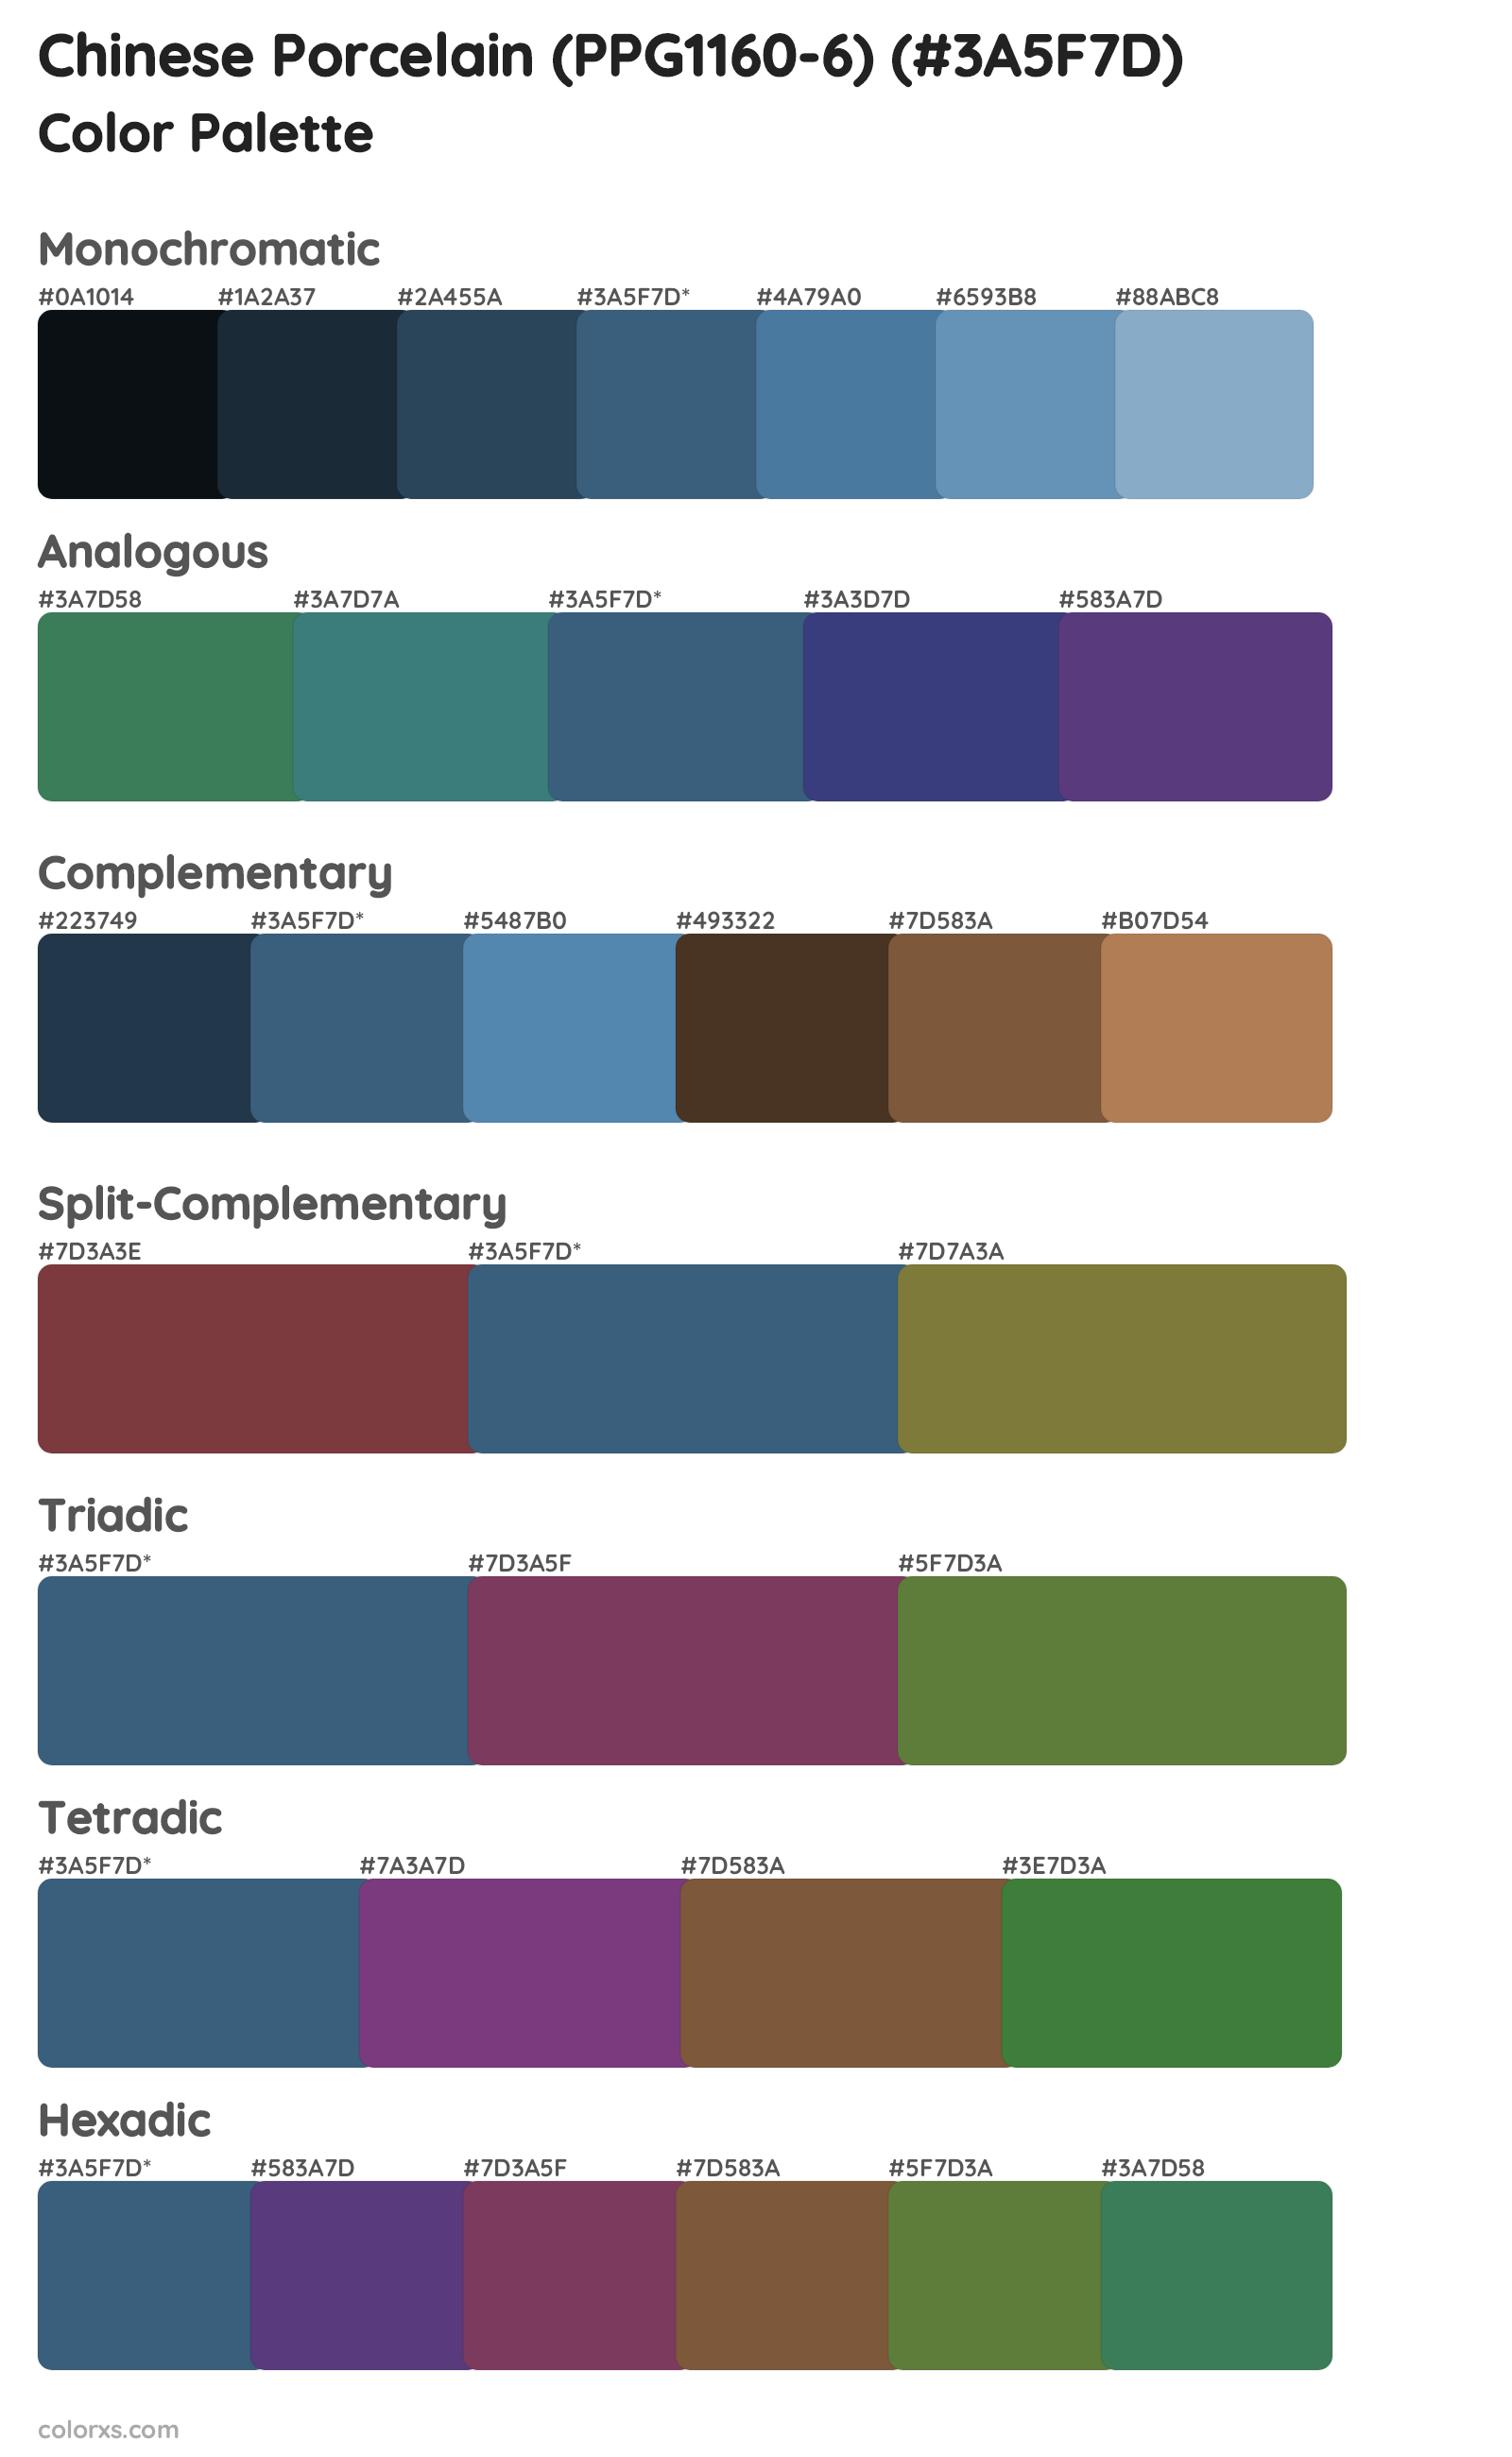 Chinese Porcelain (PPG1160-6) Color Scheme Palettes